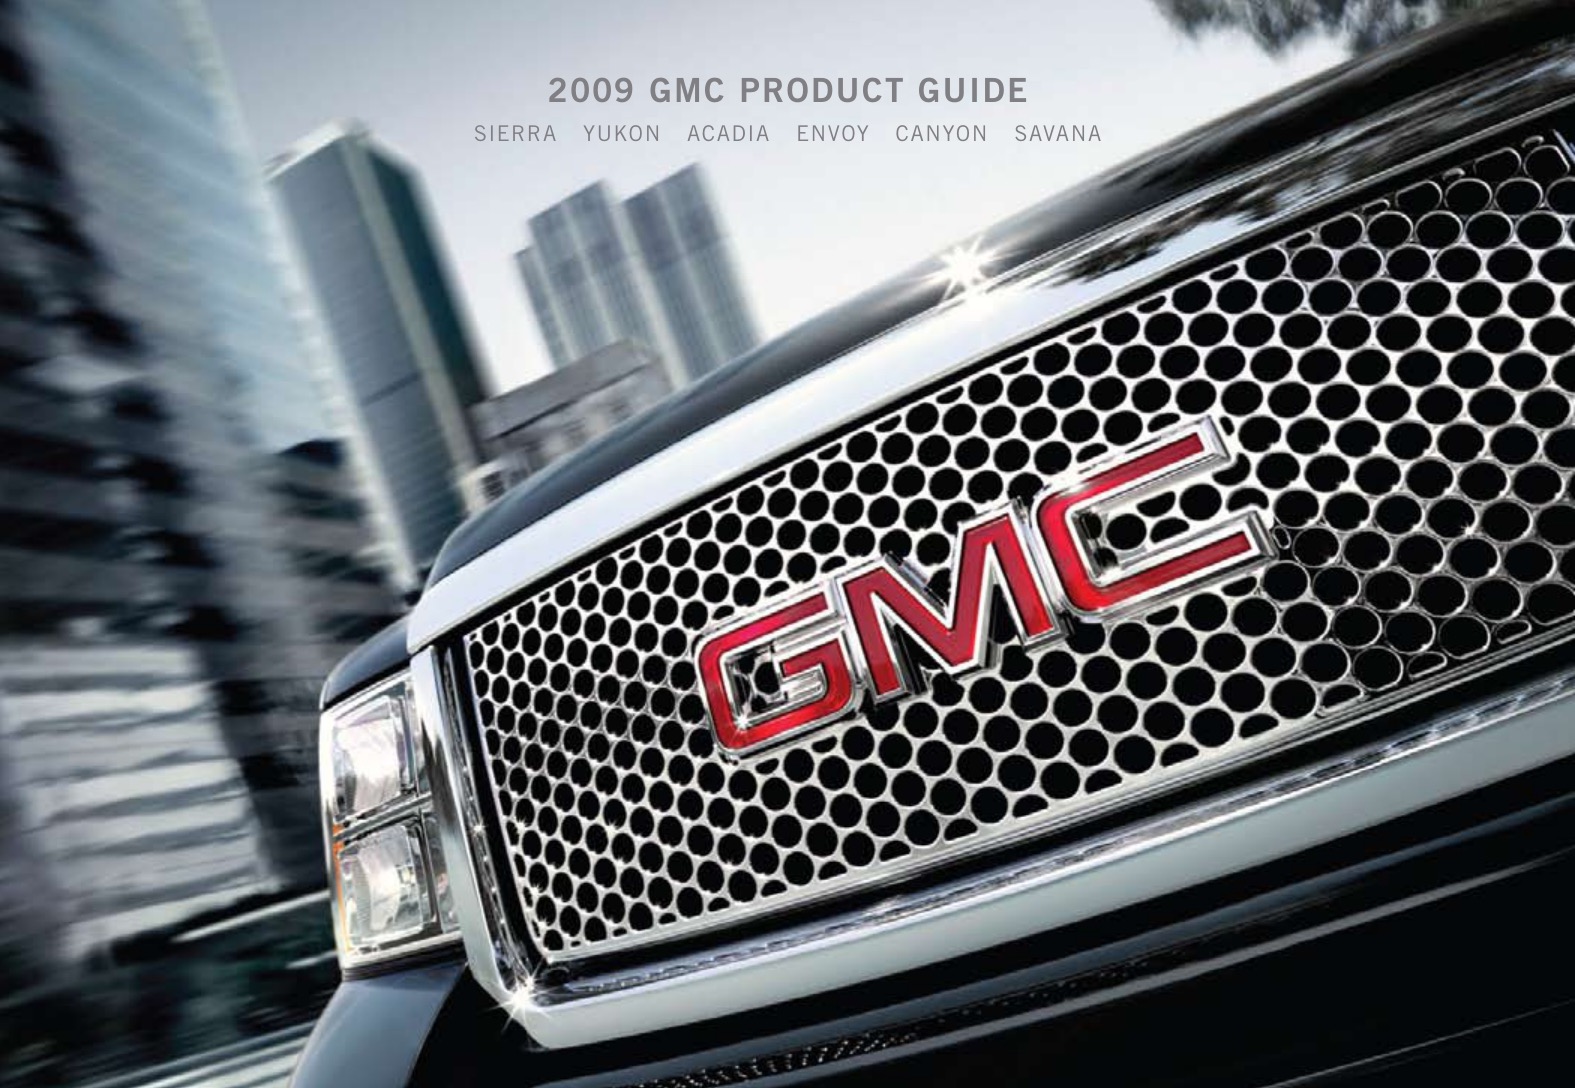 2009 GMC Full Line Brochure